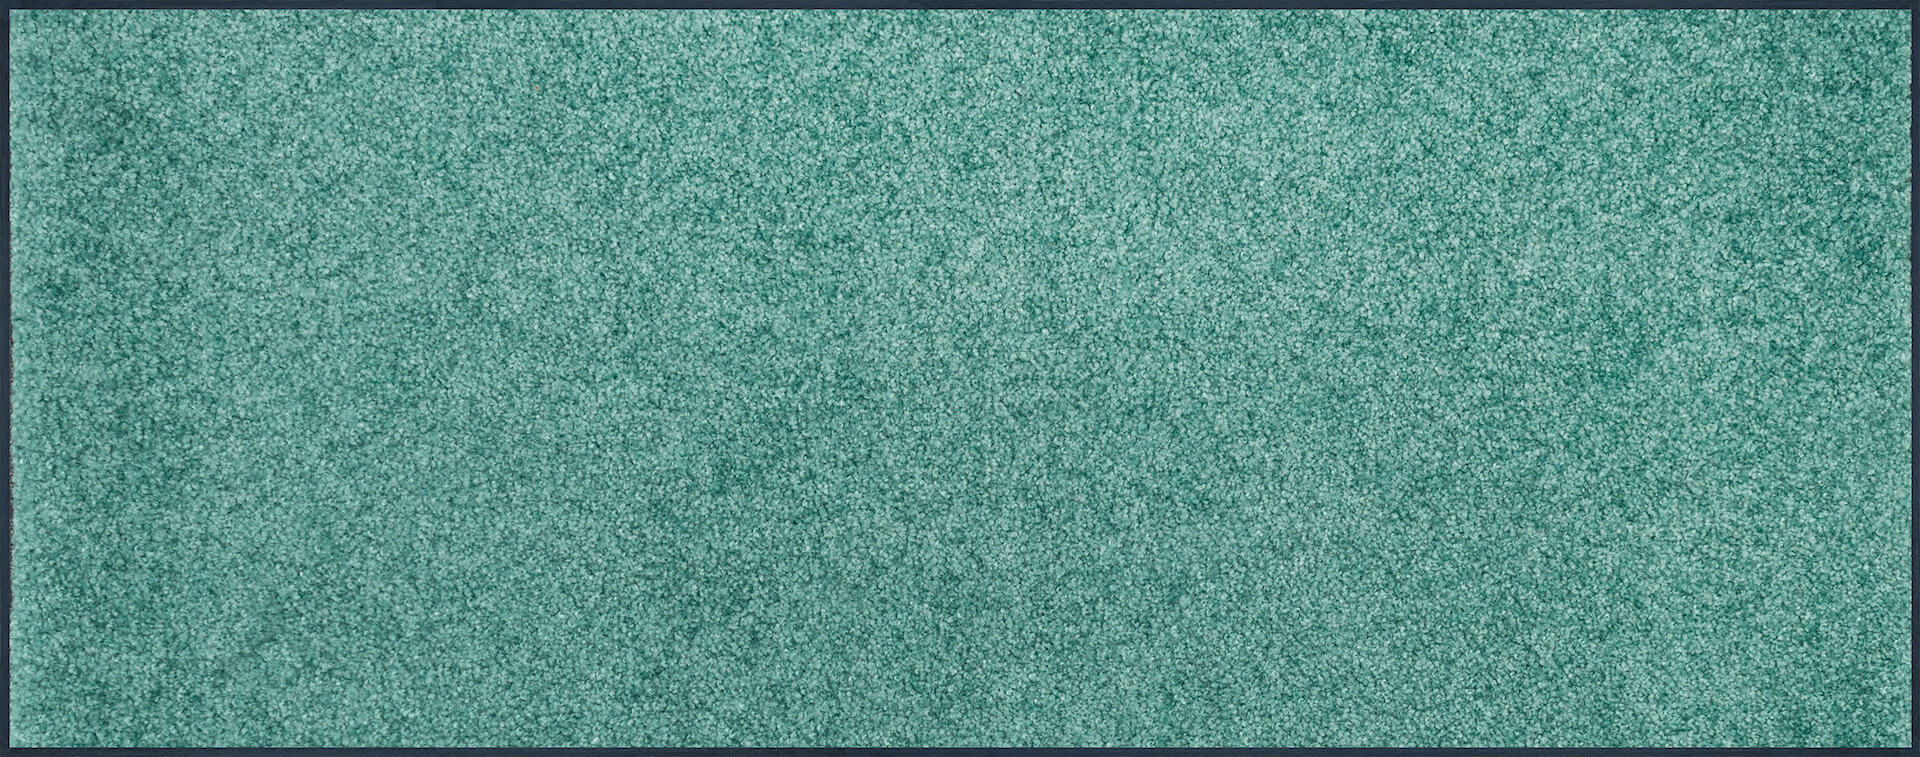 Fußmatte Wunschmaß Trend Colour Salvia Green, Wash & Dry Qualität, Draufsicht